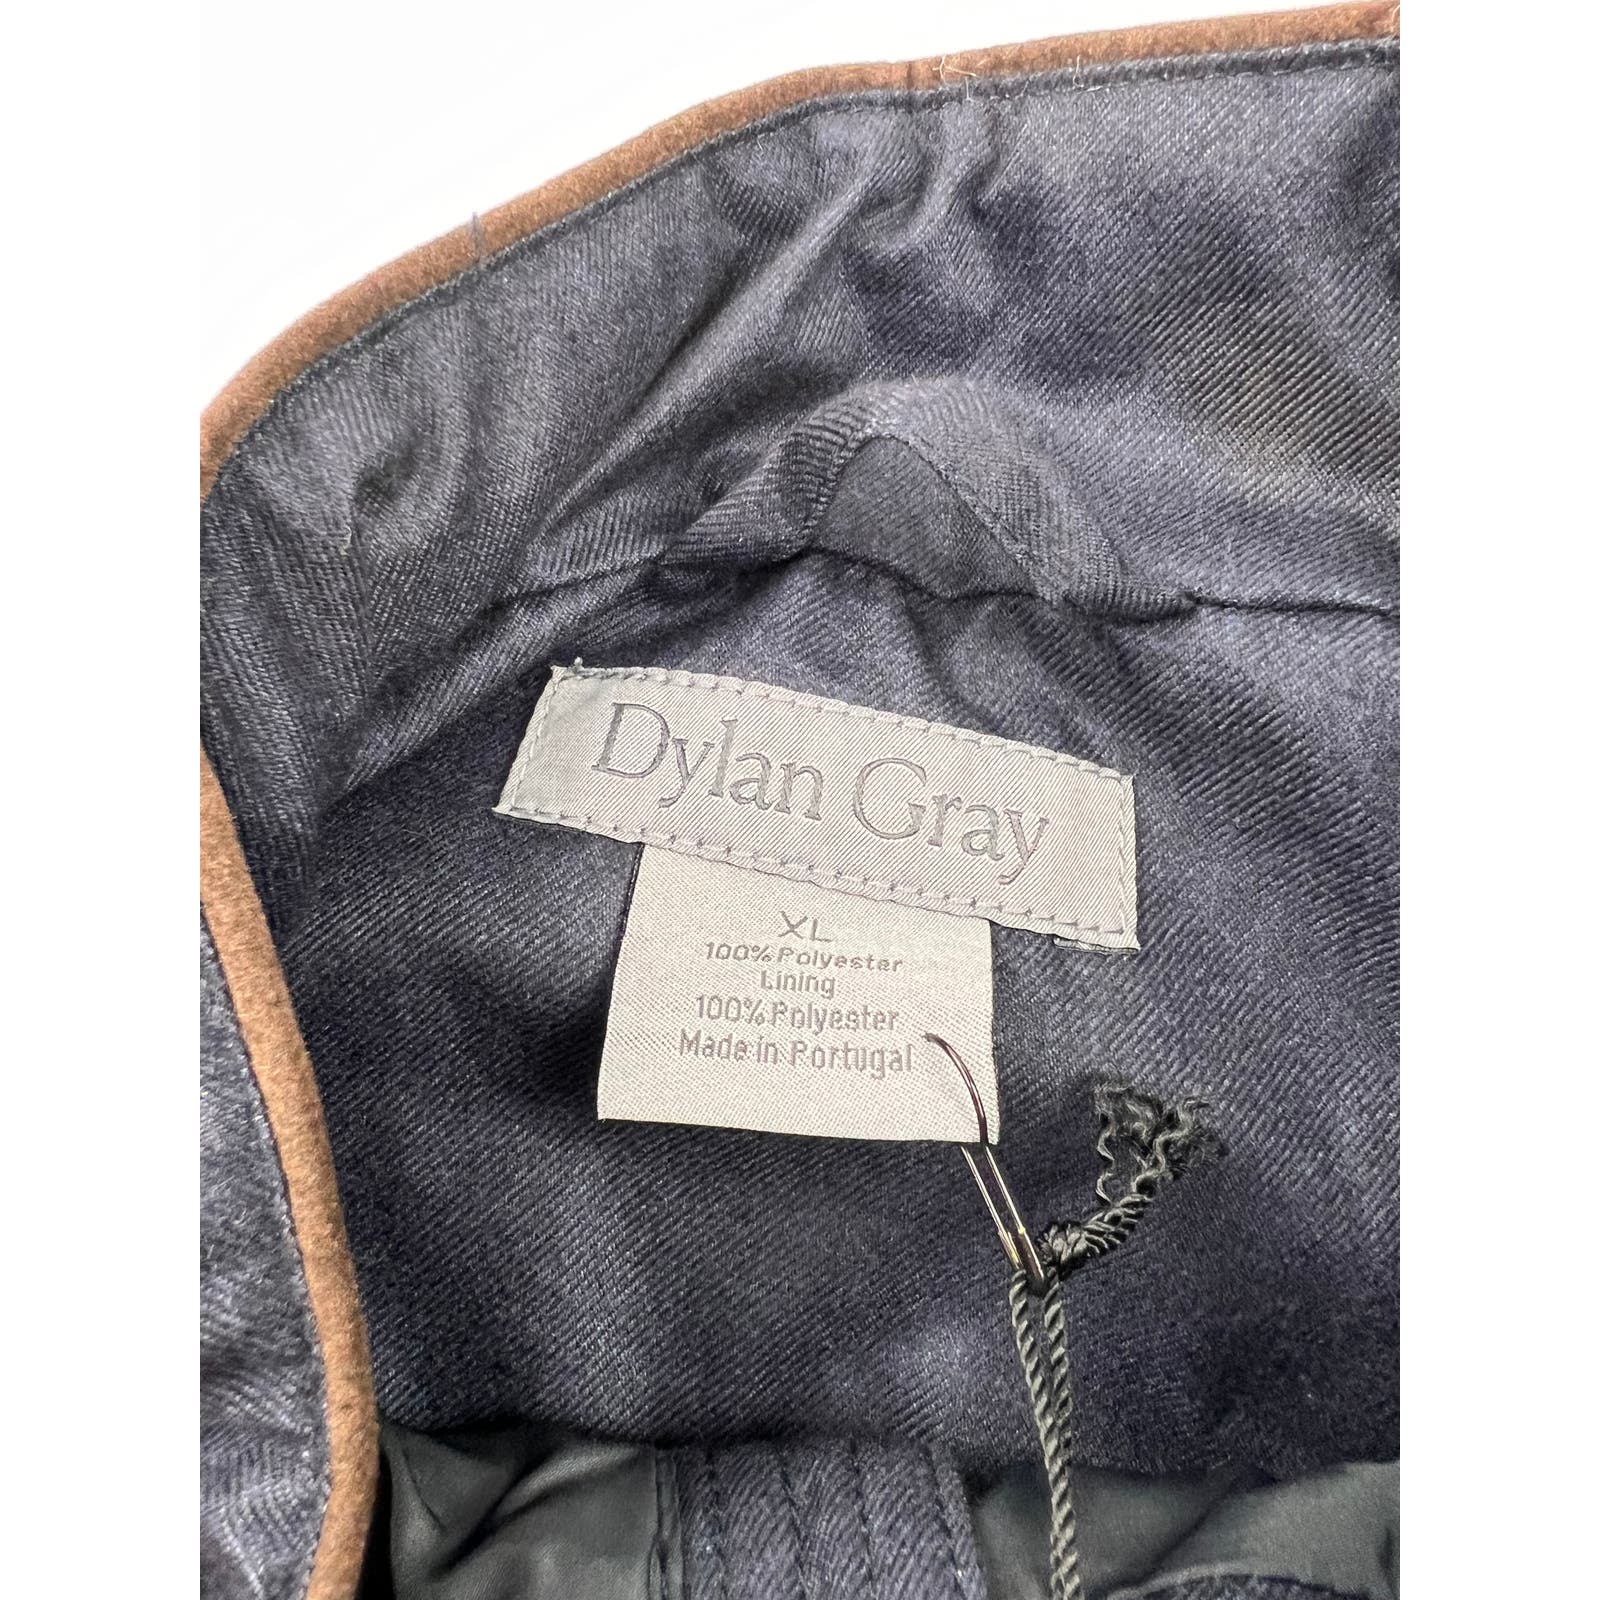 Dylan Gray Men Navy Blue Sleeveless US S  Jacket Full-Zip Vest